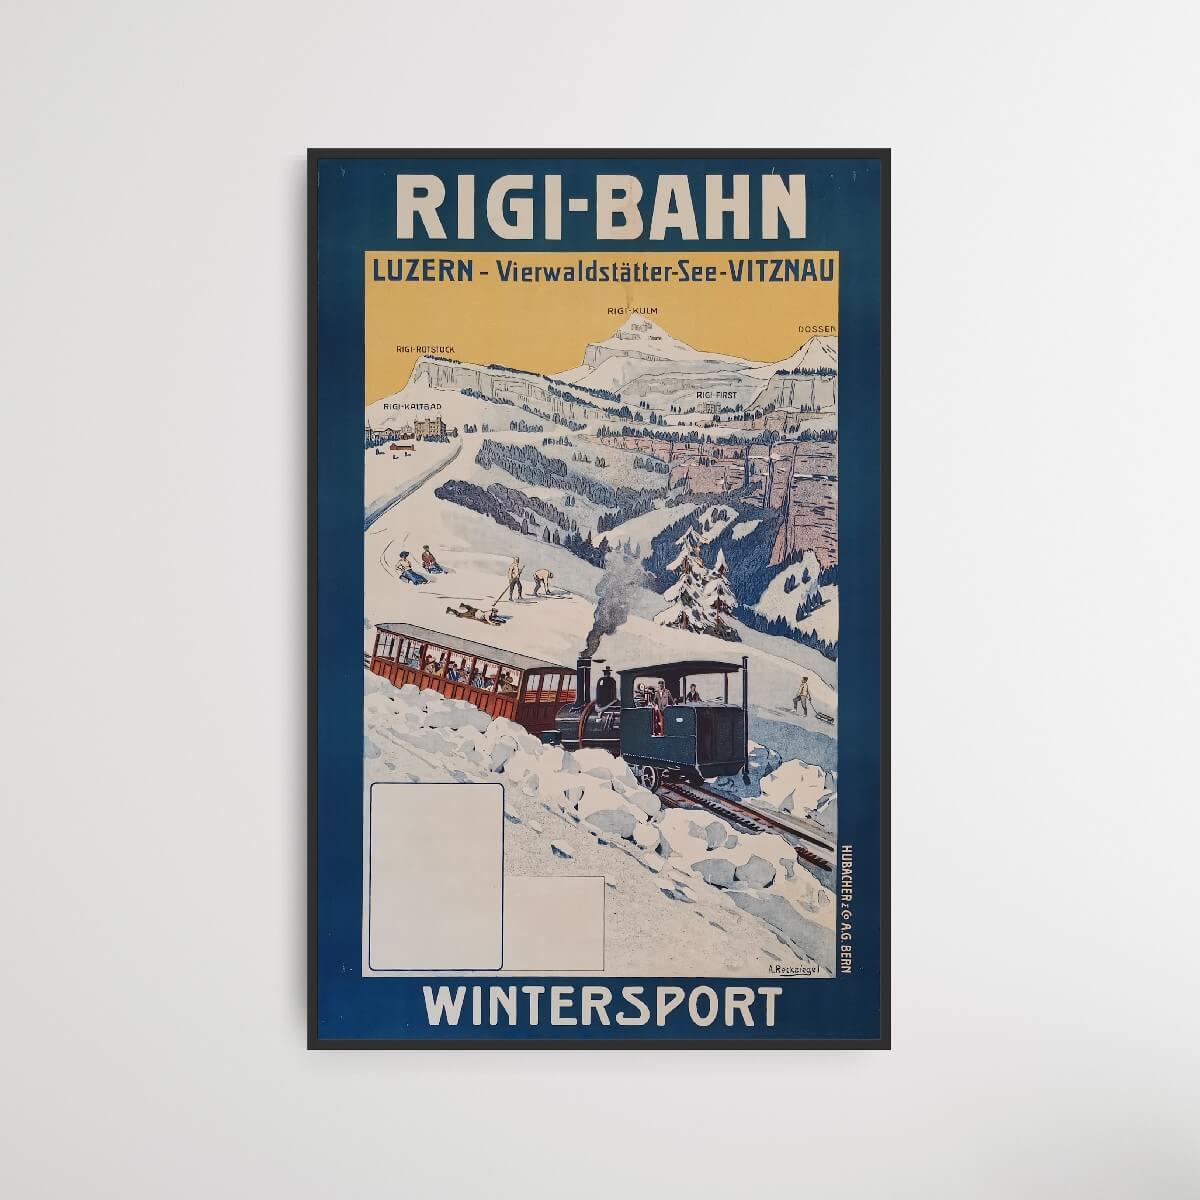 Rigi-Bahn: Luzern - Vierwaldstätter-see - Vitznau